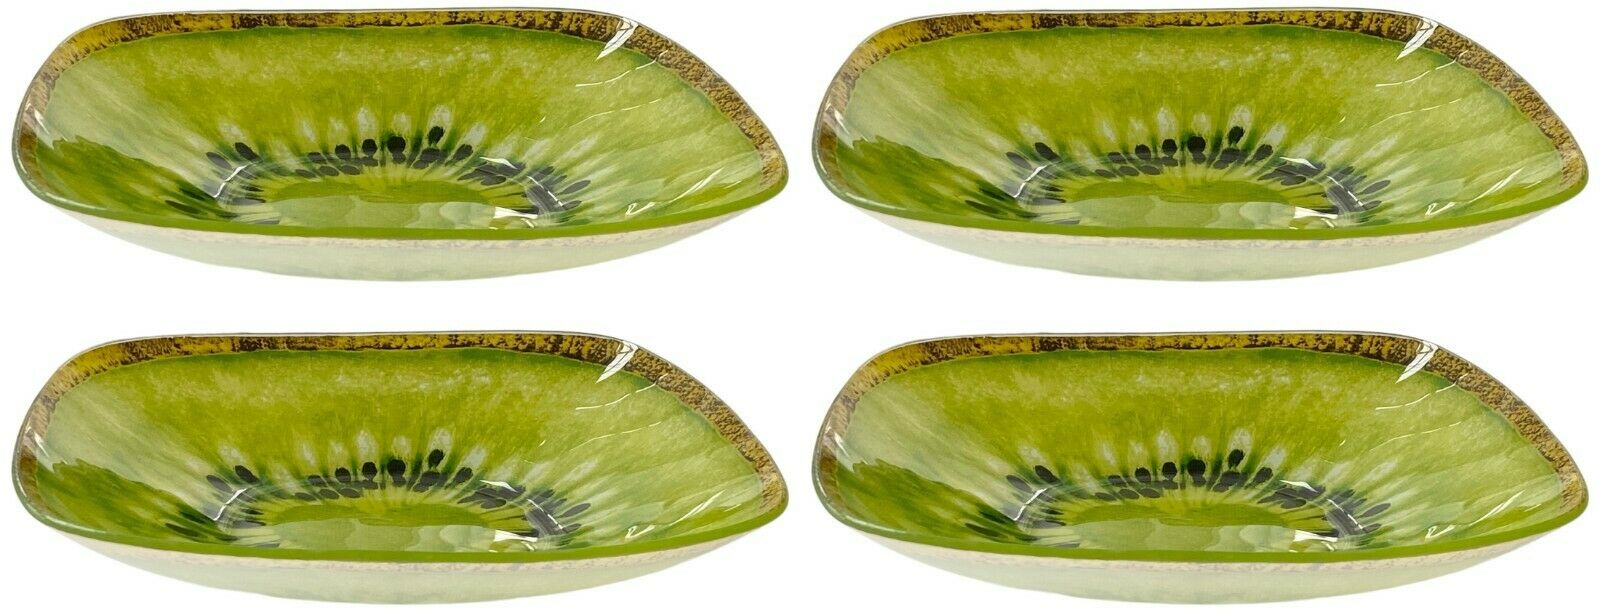 Set Of 4 Large Glass Bowls Bright Coloured Kiwi 19cm Desert Bowls Soup Bowls